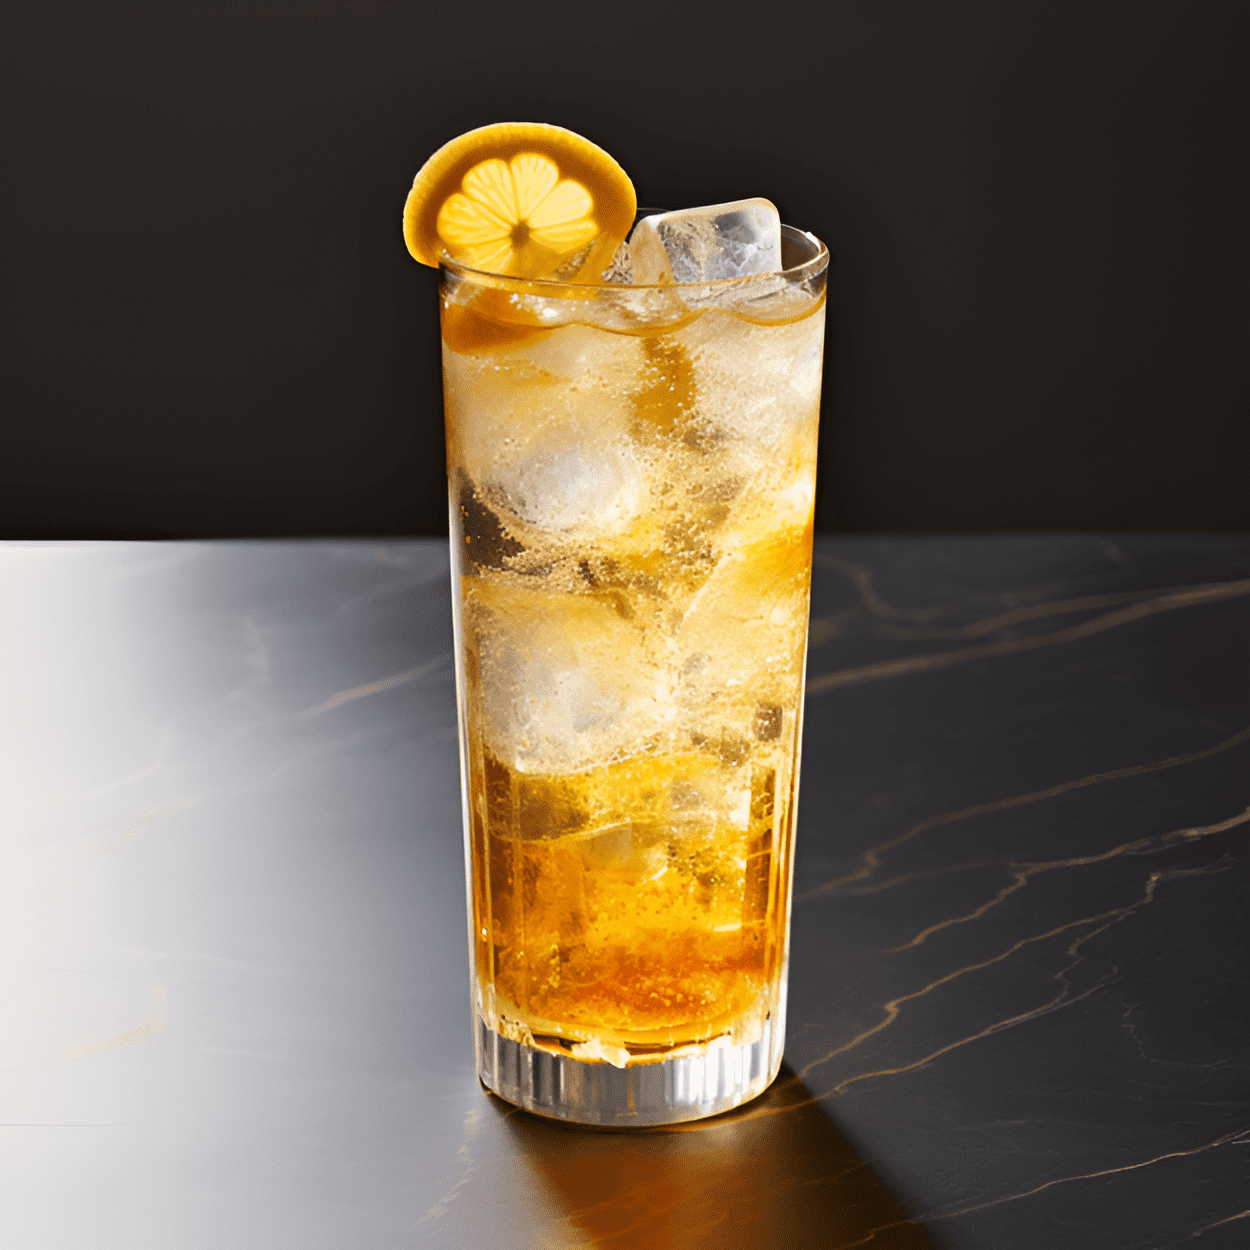 Tokyo Highball Cóctel Receta - El Tokyo Highball es crujiente, refrescante y sutilmente dulce. El whisky japonés proporciona una base suave y rica, mientras que el agua de soda añade una efervescencia burbujeante. El toque de limón le da un refrescante giro cítrico.